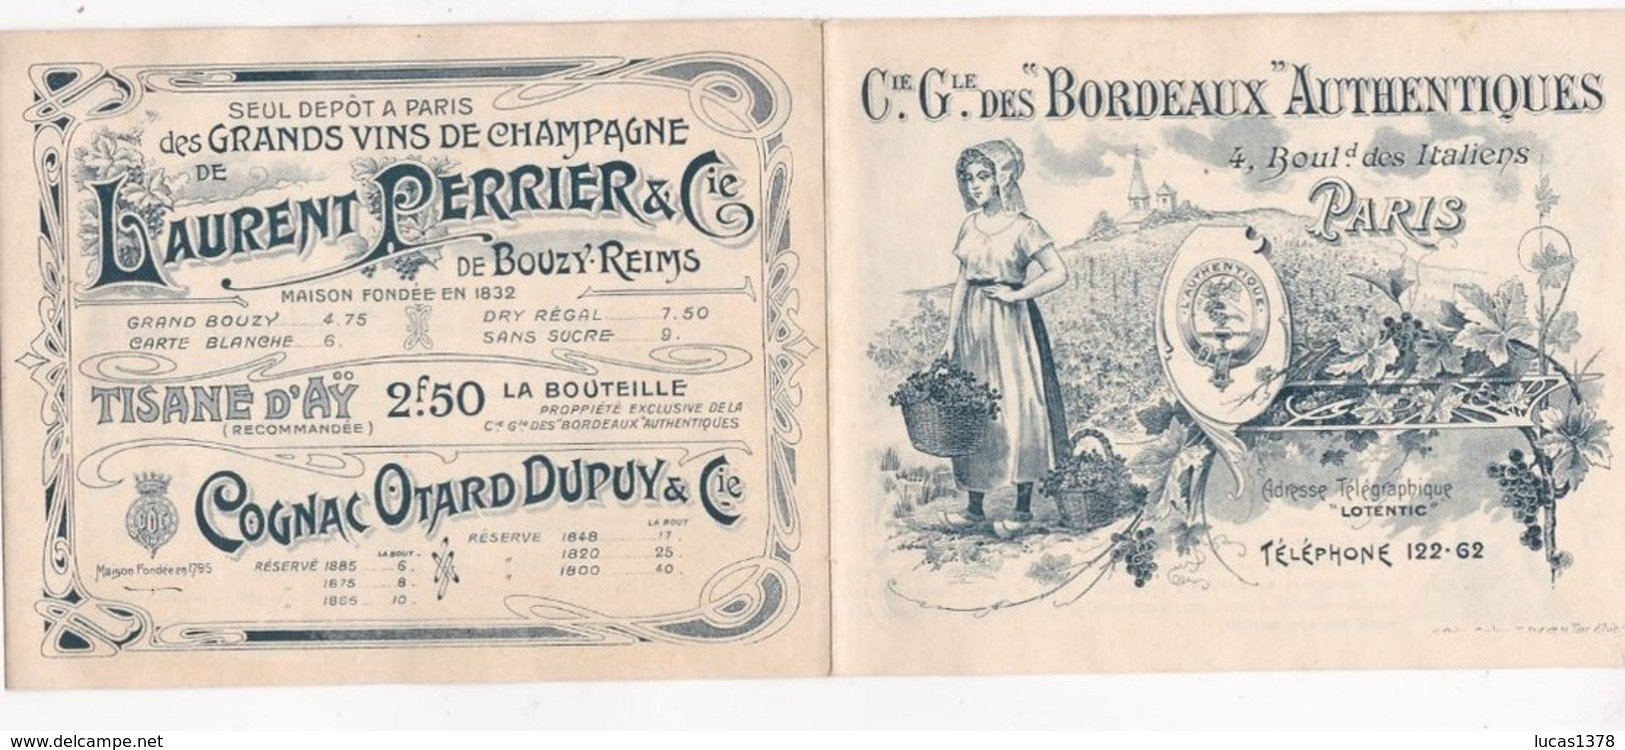 EXCEPTIONNEL TARIFS GRANDS CRUS BORDEAUX 1877 A 1896 !!! CIE GENERALE DES BORDEAUX AUTHENTIQUES !! - Alcohols